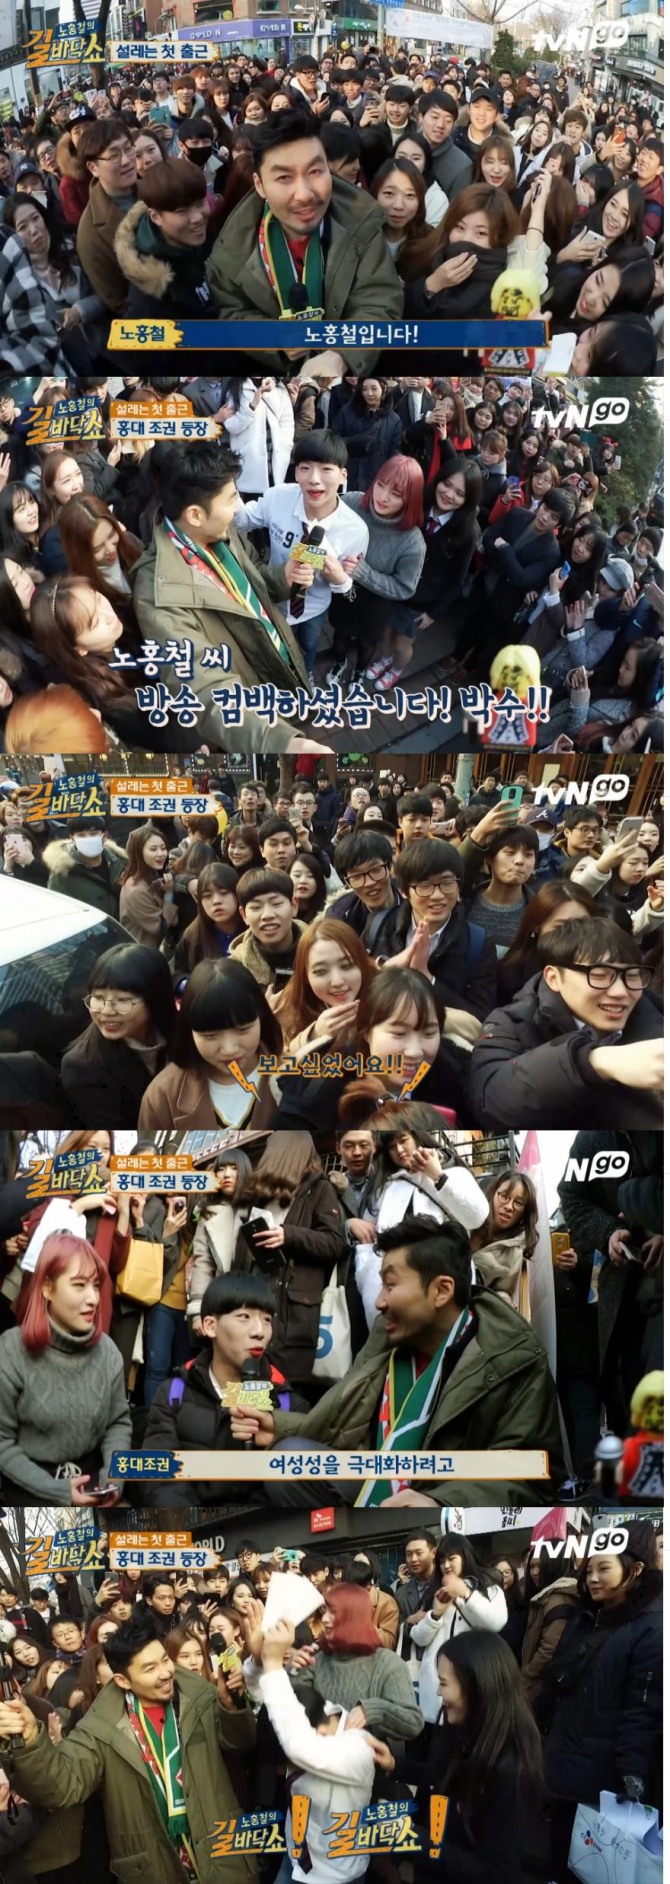 7일 첫방송을 앞둔 tvN '노홍철의 길바닥 쇼'가 5일 홍대 앞에서 첫 공개돼 뜨거운 호응을 얻었다./사진=tvN 방송 캡처